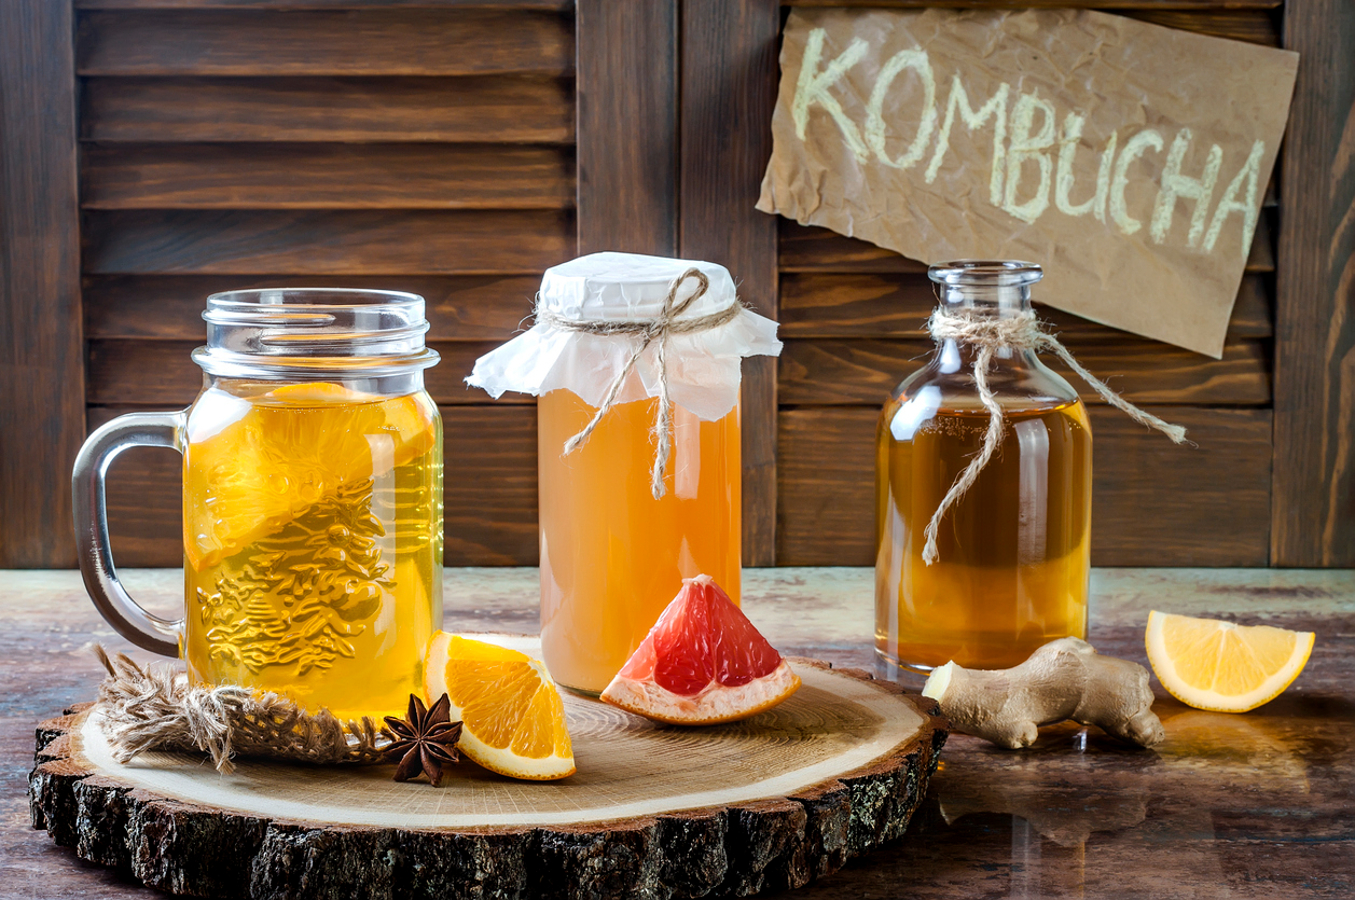 Kombucha é uma bebida fermentada à base de chá, conhecida por suas potenciais propriedades probióticas e benefícios à saúde